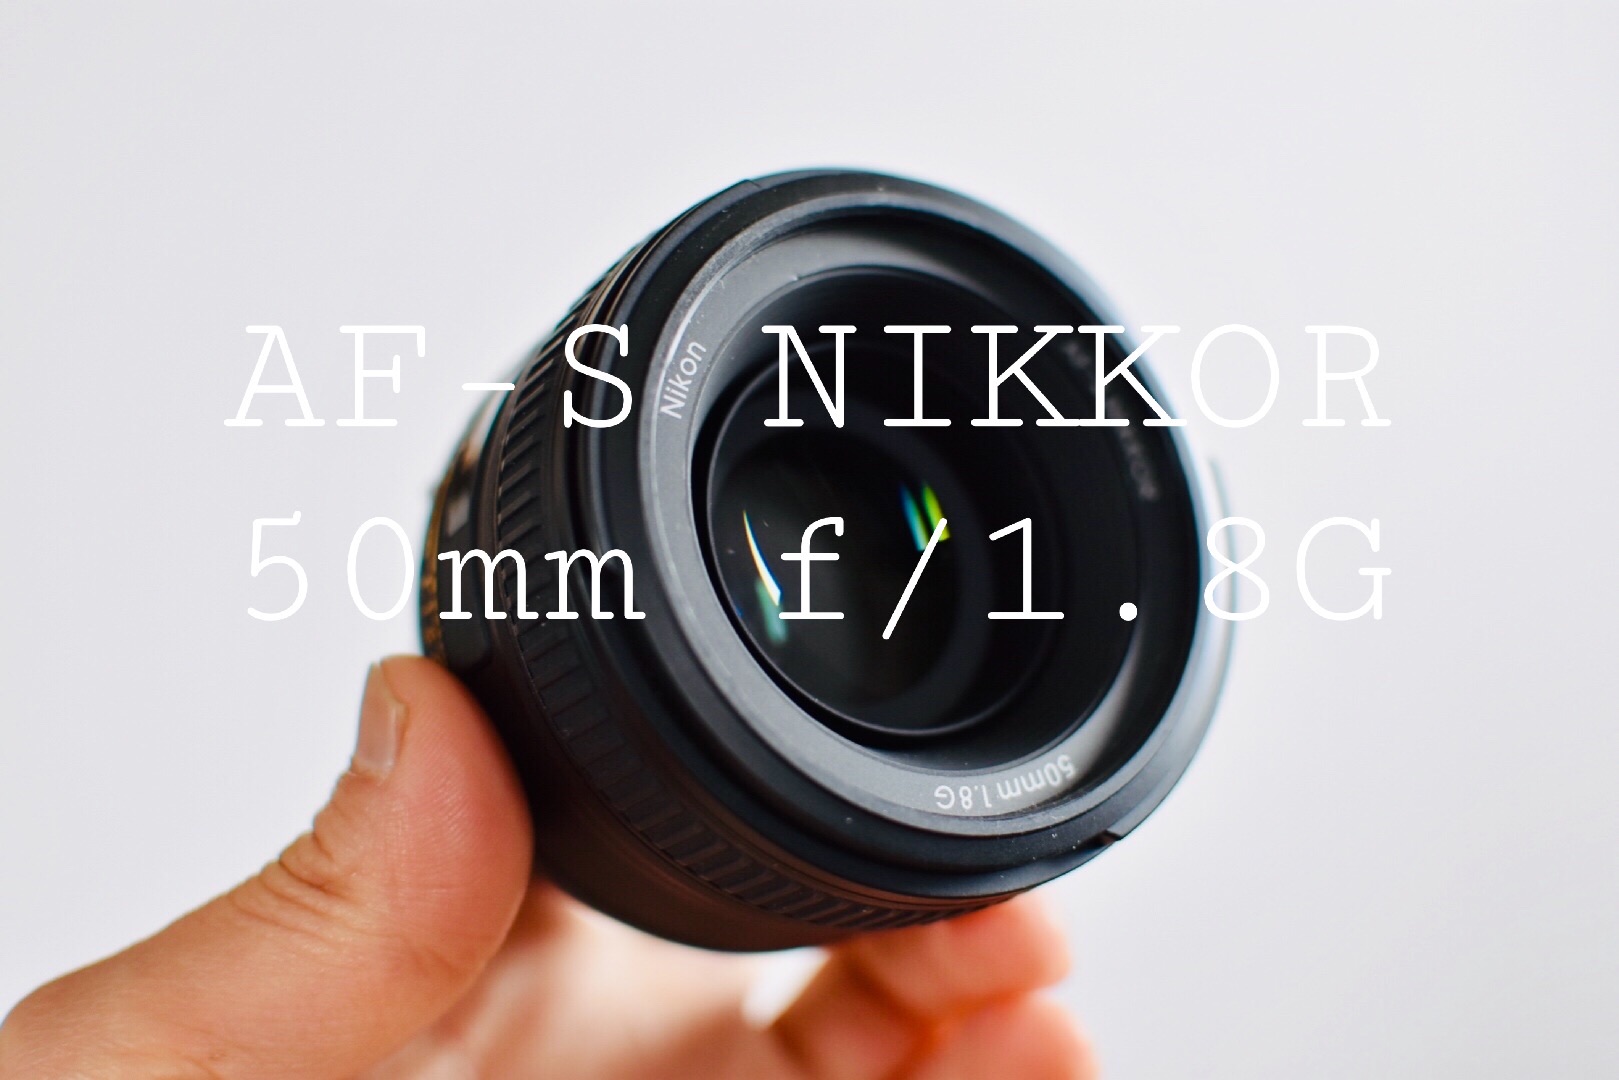 最新 作例多数】af-s nikkor 50mm f/1.8g 実写レビュー | iro-iro